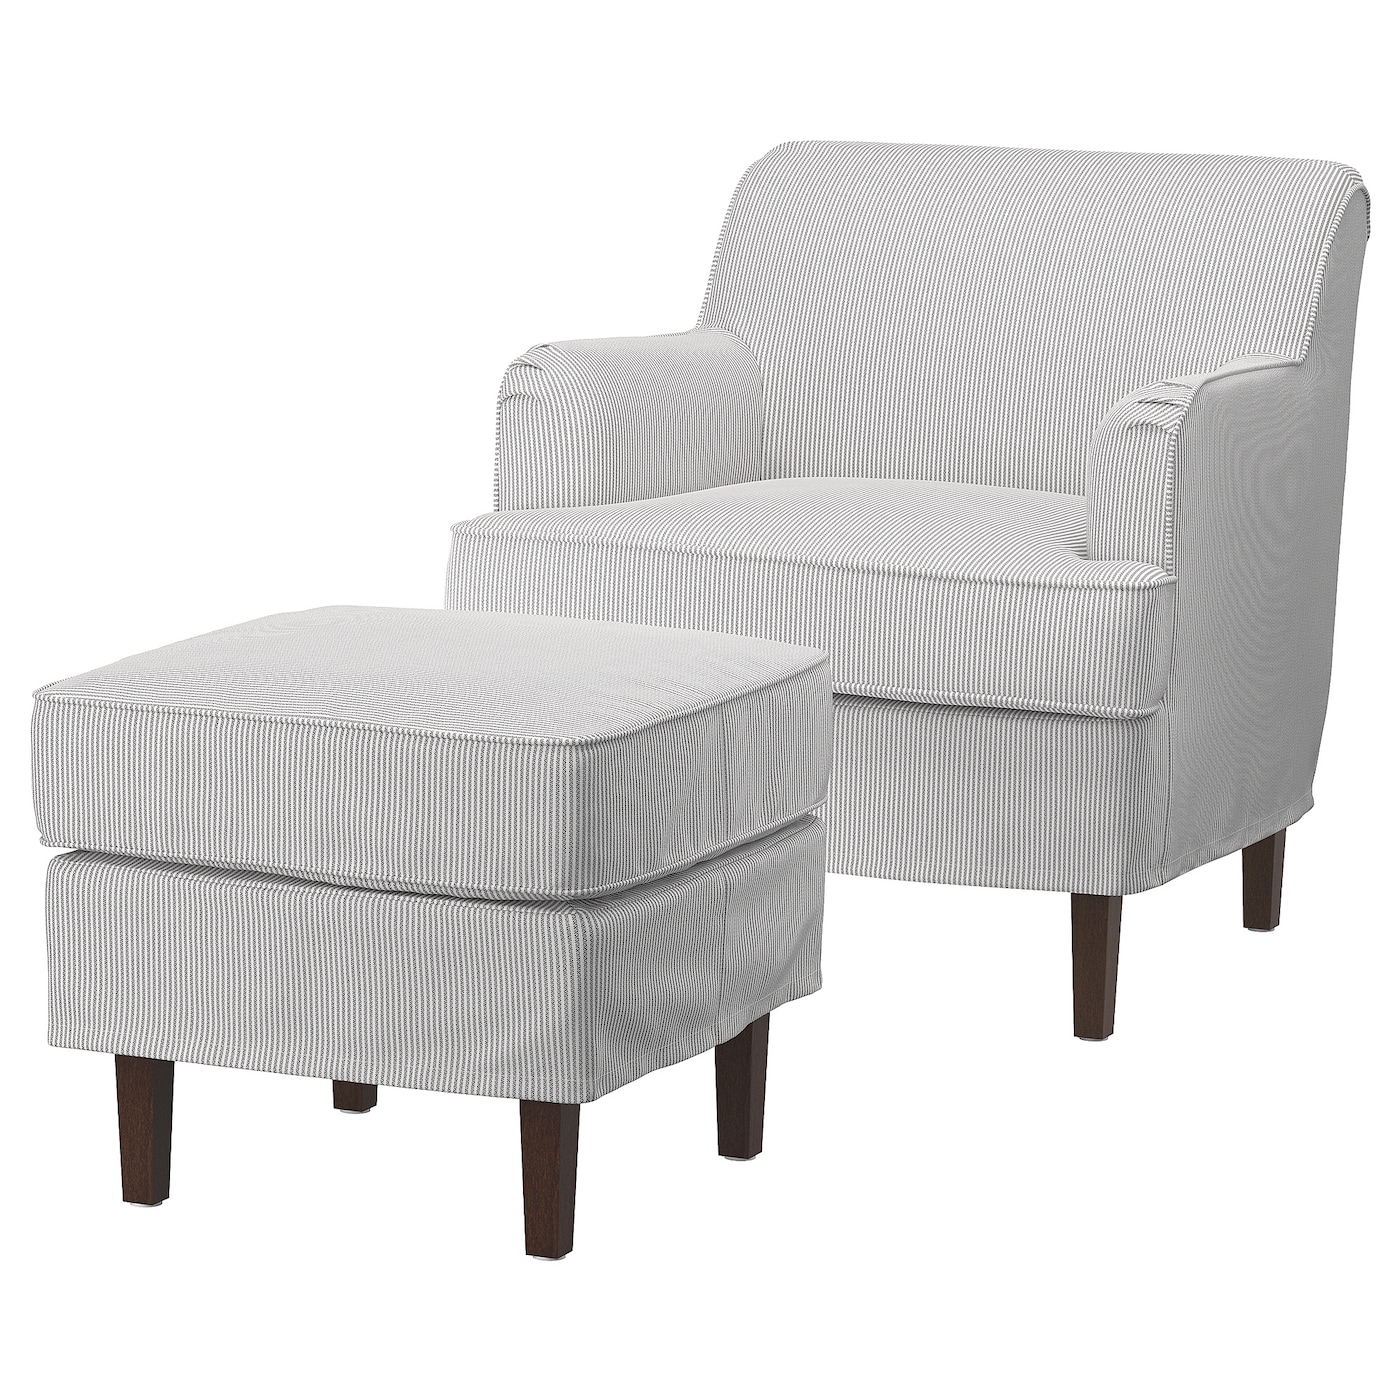 РОКШЁН Кресло и подставка для ног, Кловста серый/белый ROCKSJON IKEA